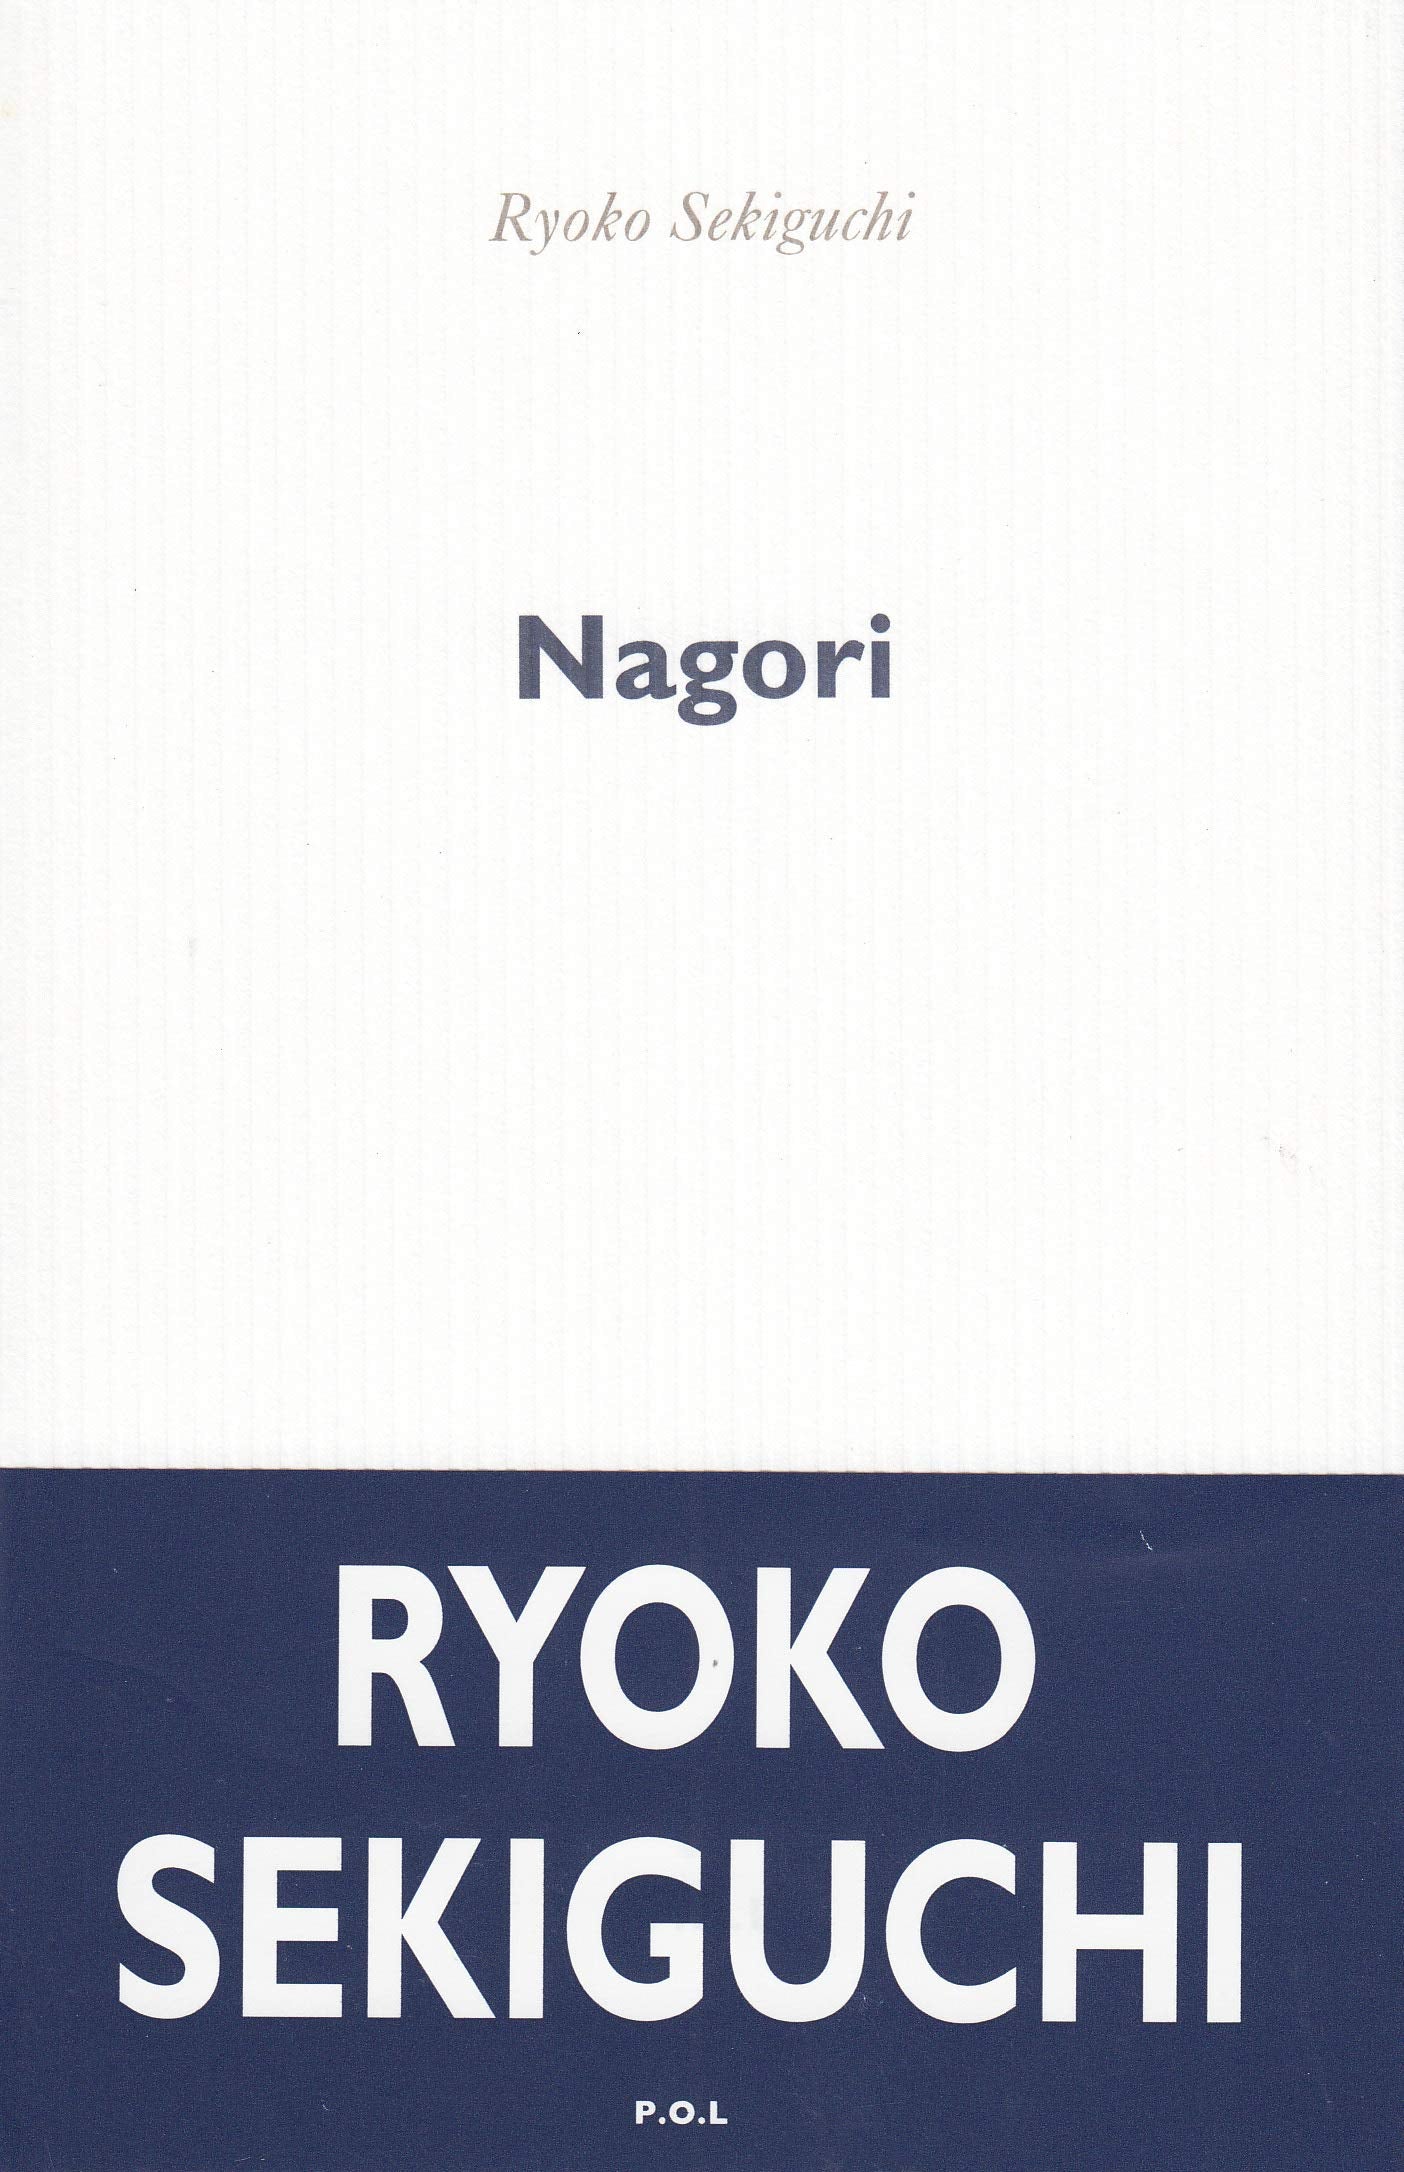 Ryoko Sekiguchi - Nagori